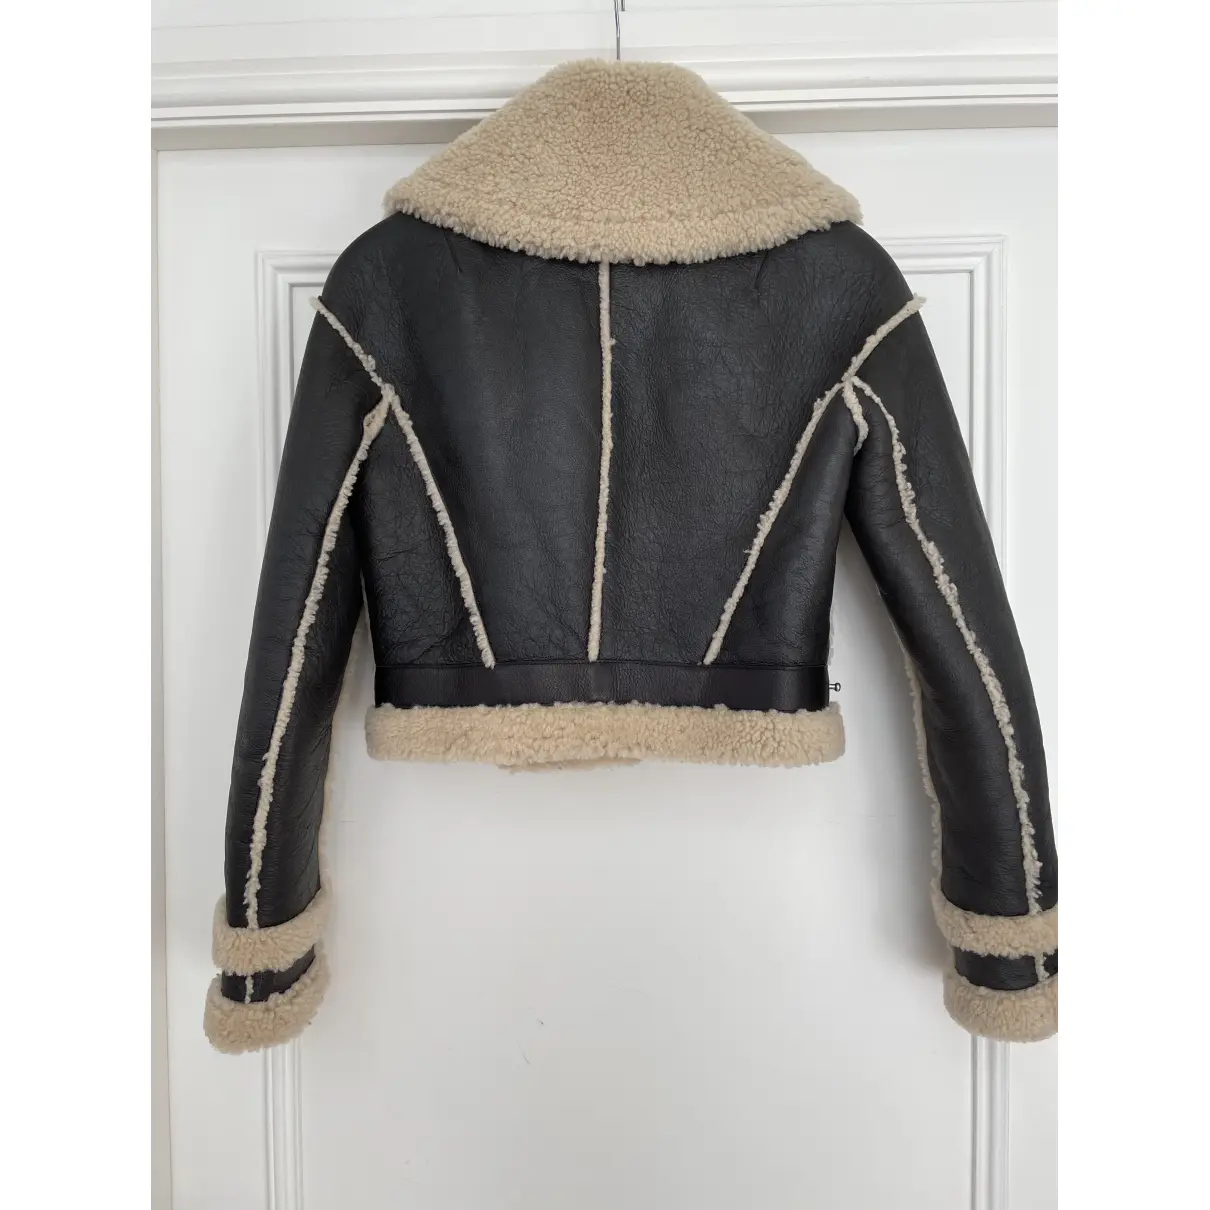 Buy Rodarte Leather coat online